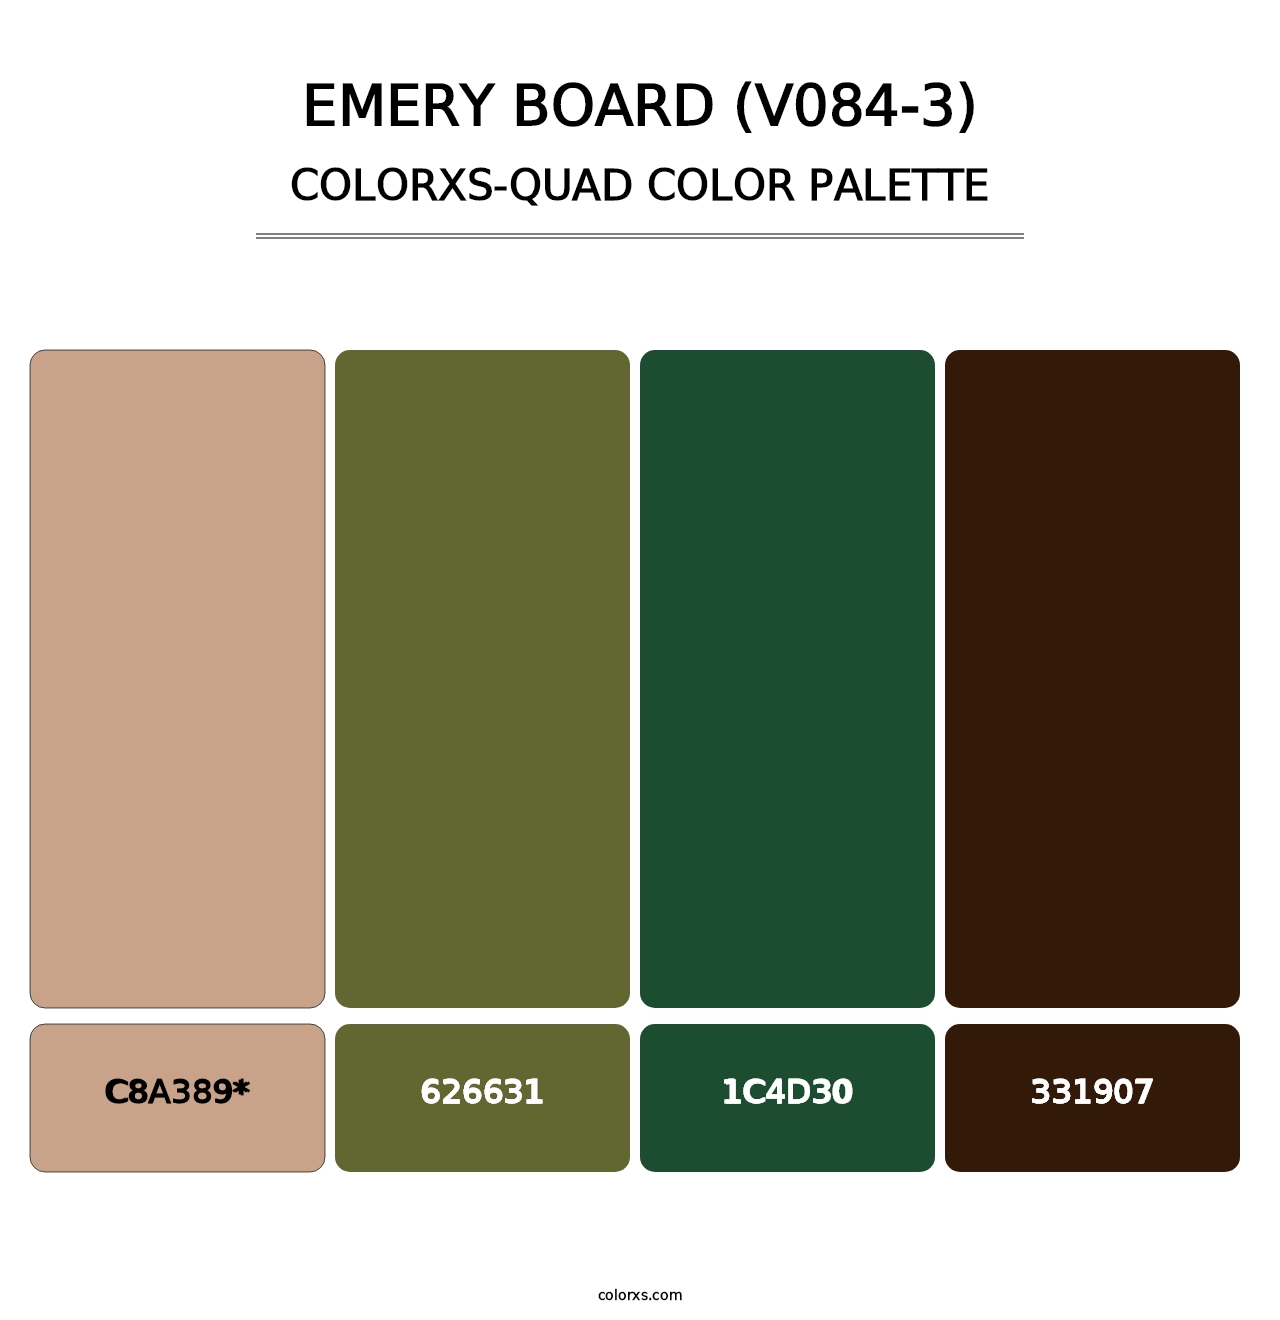 Emery Board (V084-3) - Colorxs Quad Palette